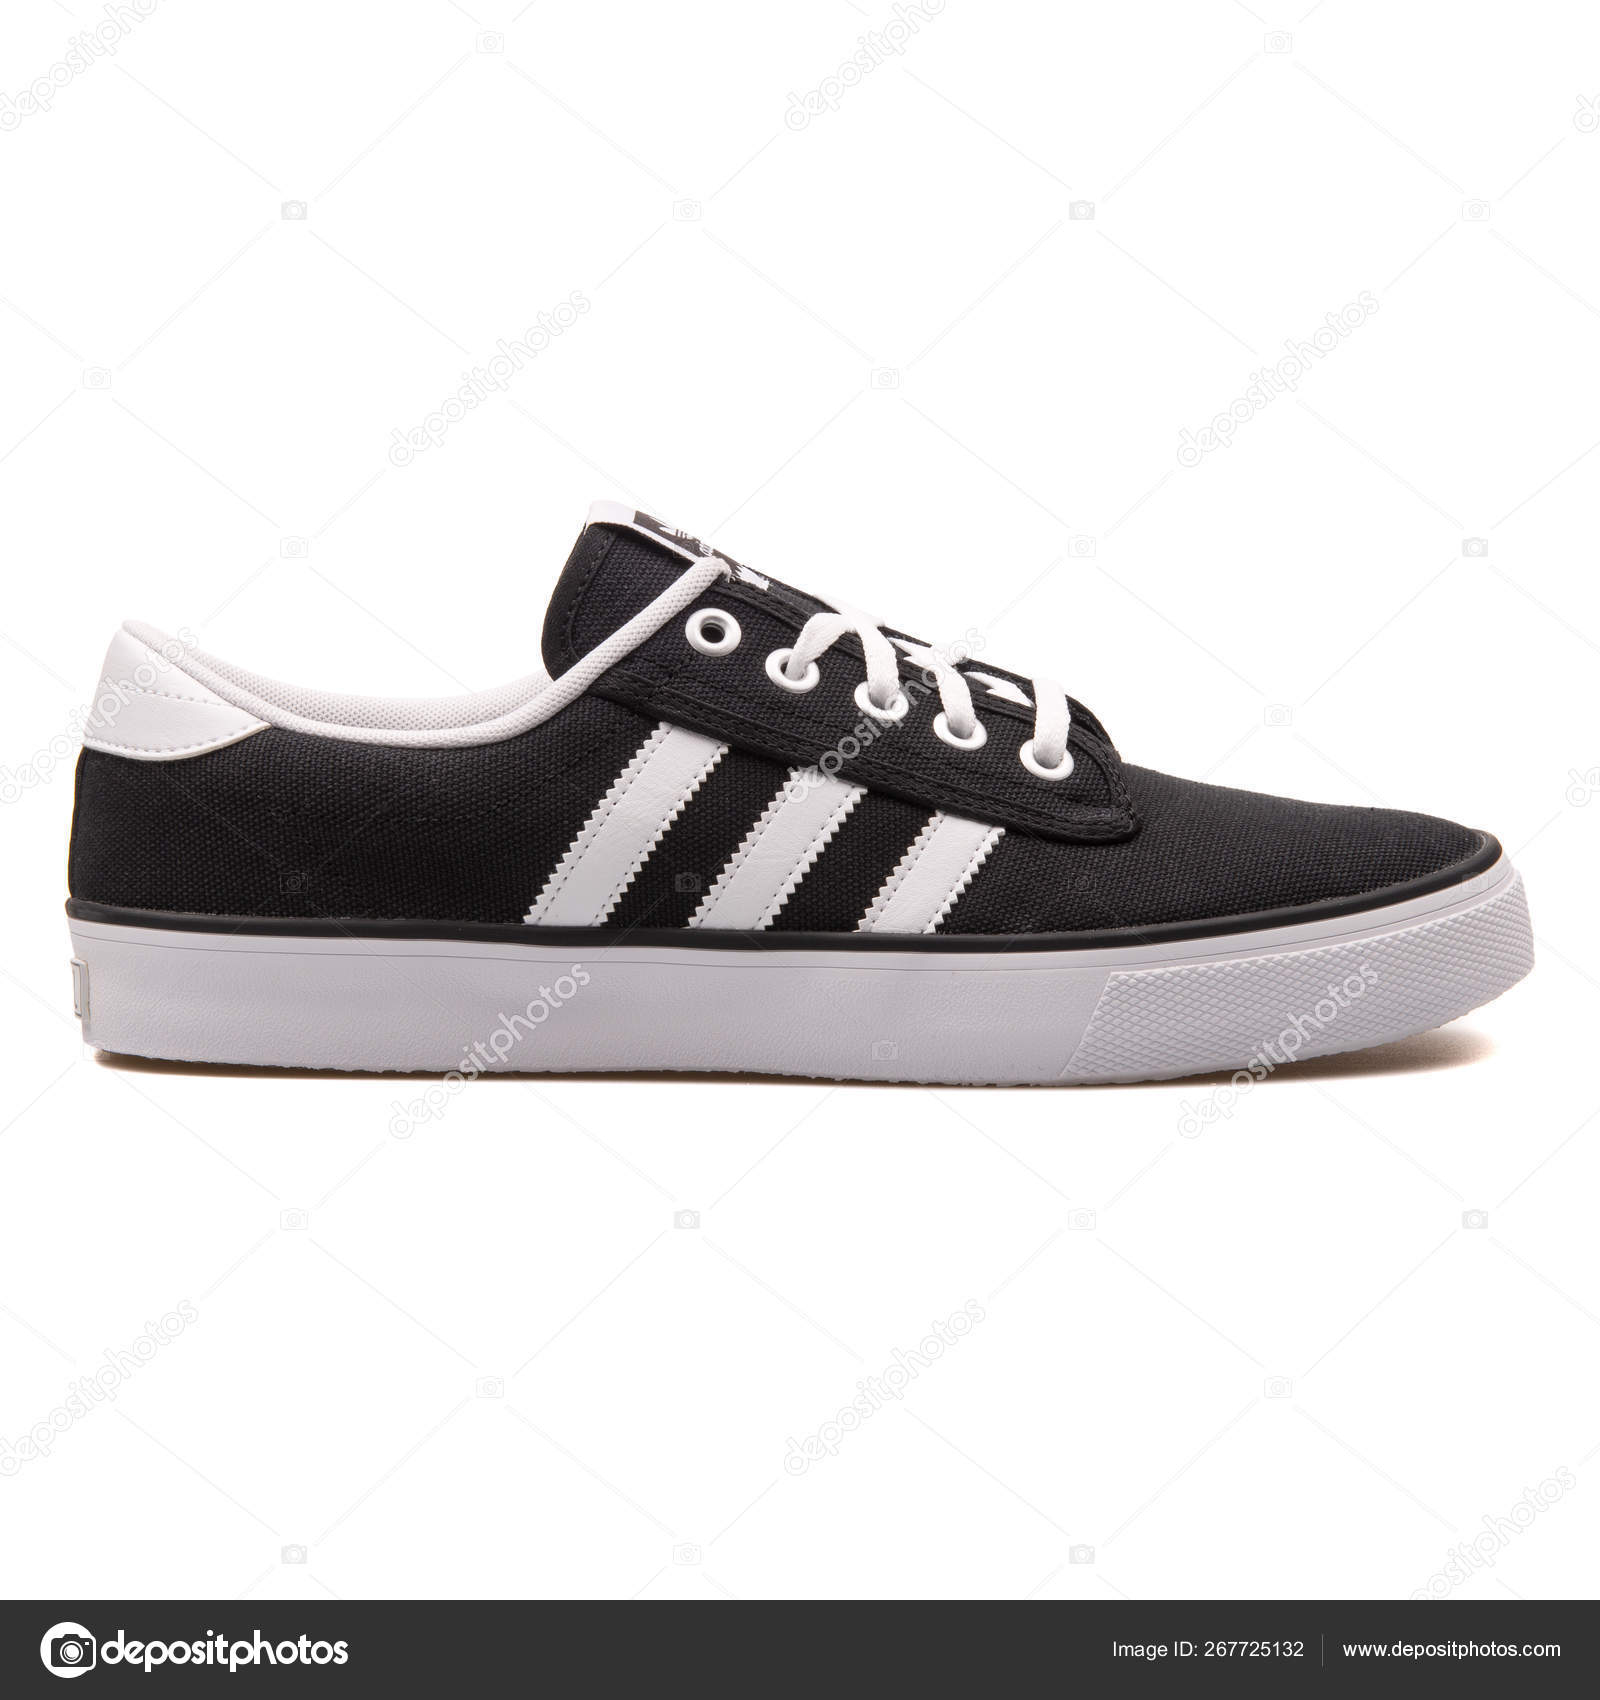 adidas kiel black and white